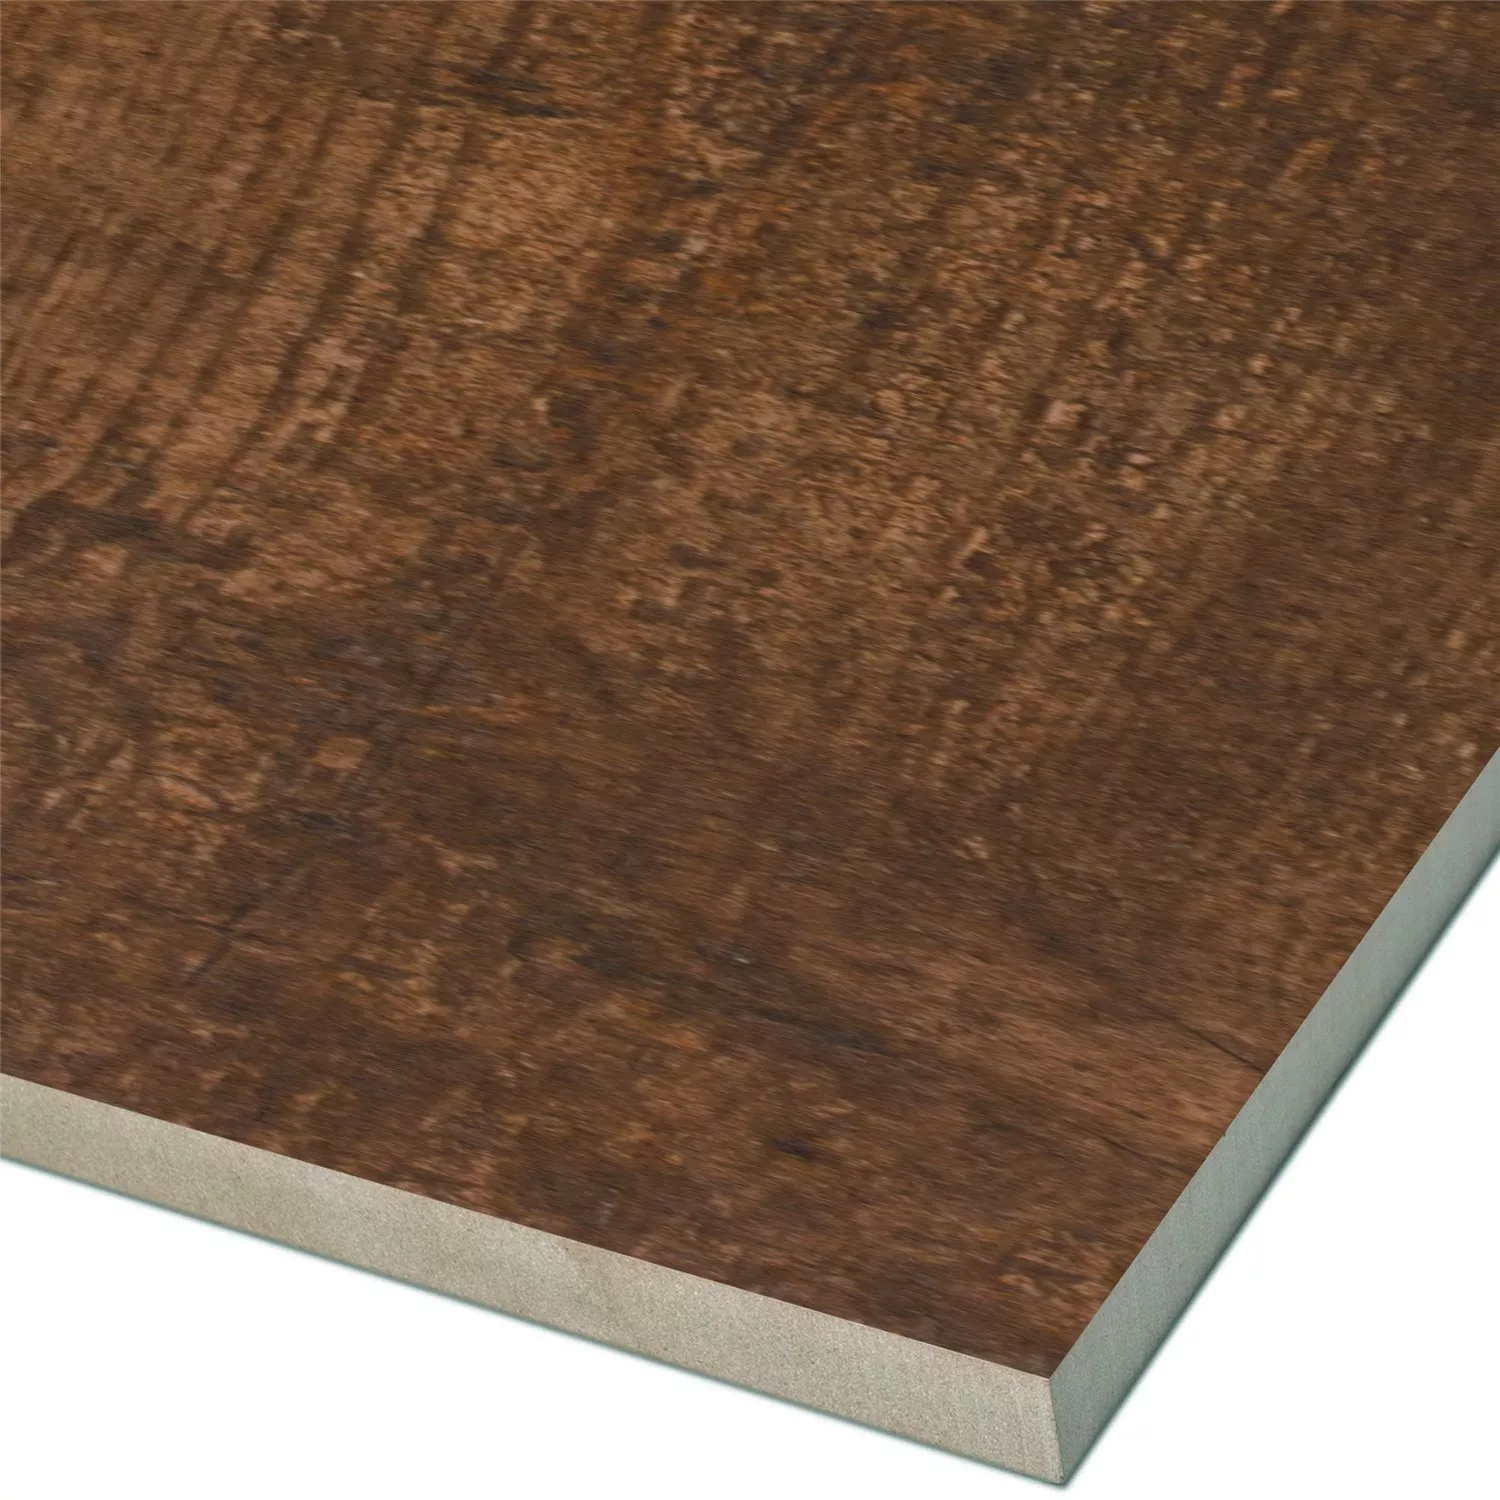 Sample Wood Optic Floor Tiles Eiffel Pepita 10x60cm